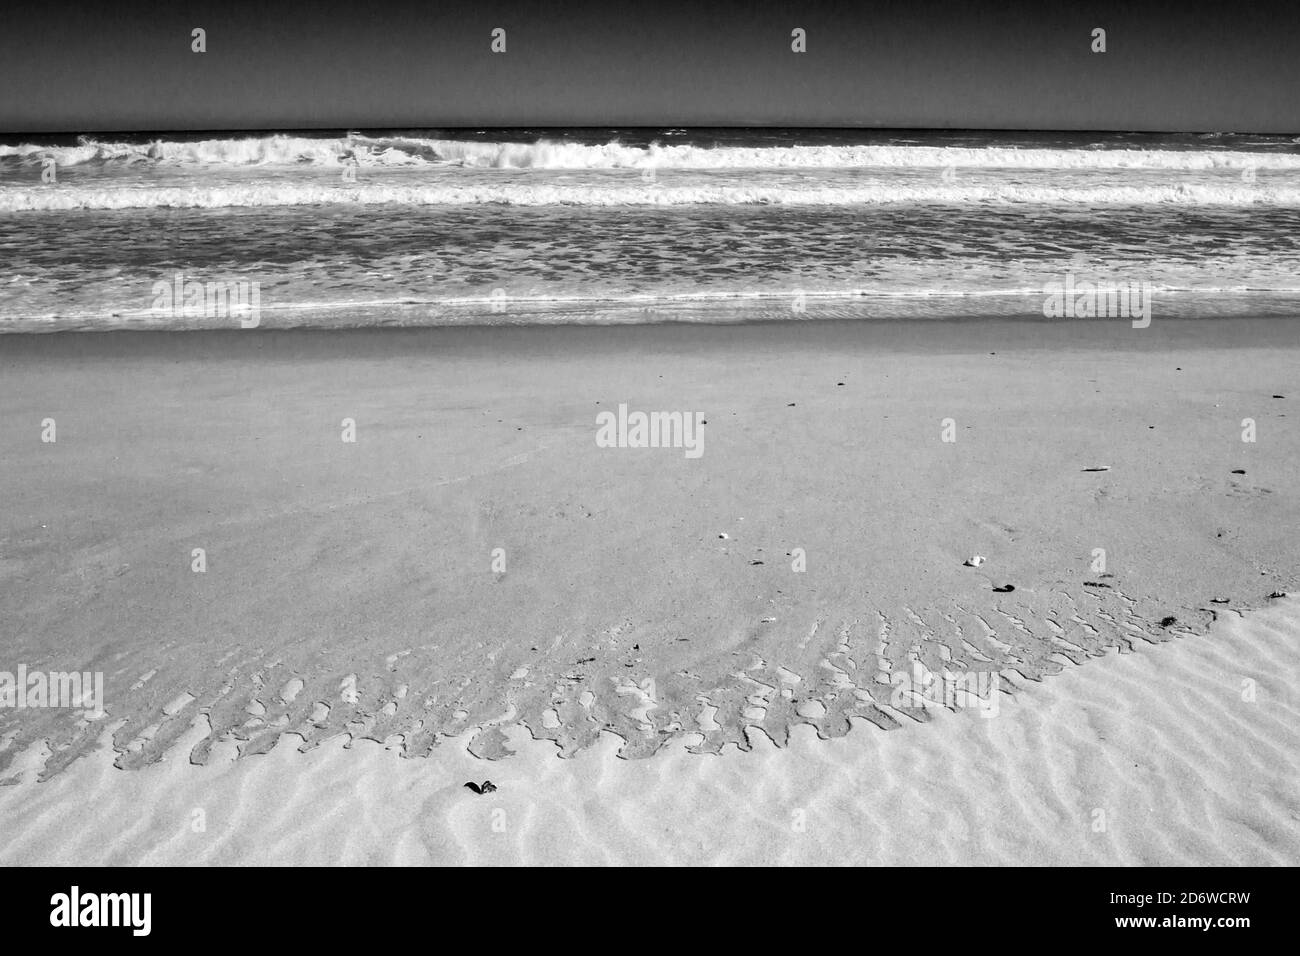 Muster, die an einem Sandstrand zurückgelassen wurden, nachdem sich eine Welle in Monochrome zurückgezogen hatte, fotografiert an der Westküste Südafrikas Stockfoto